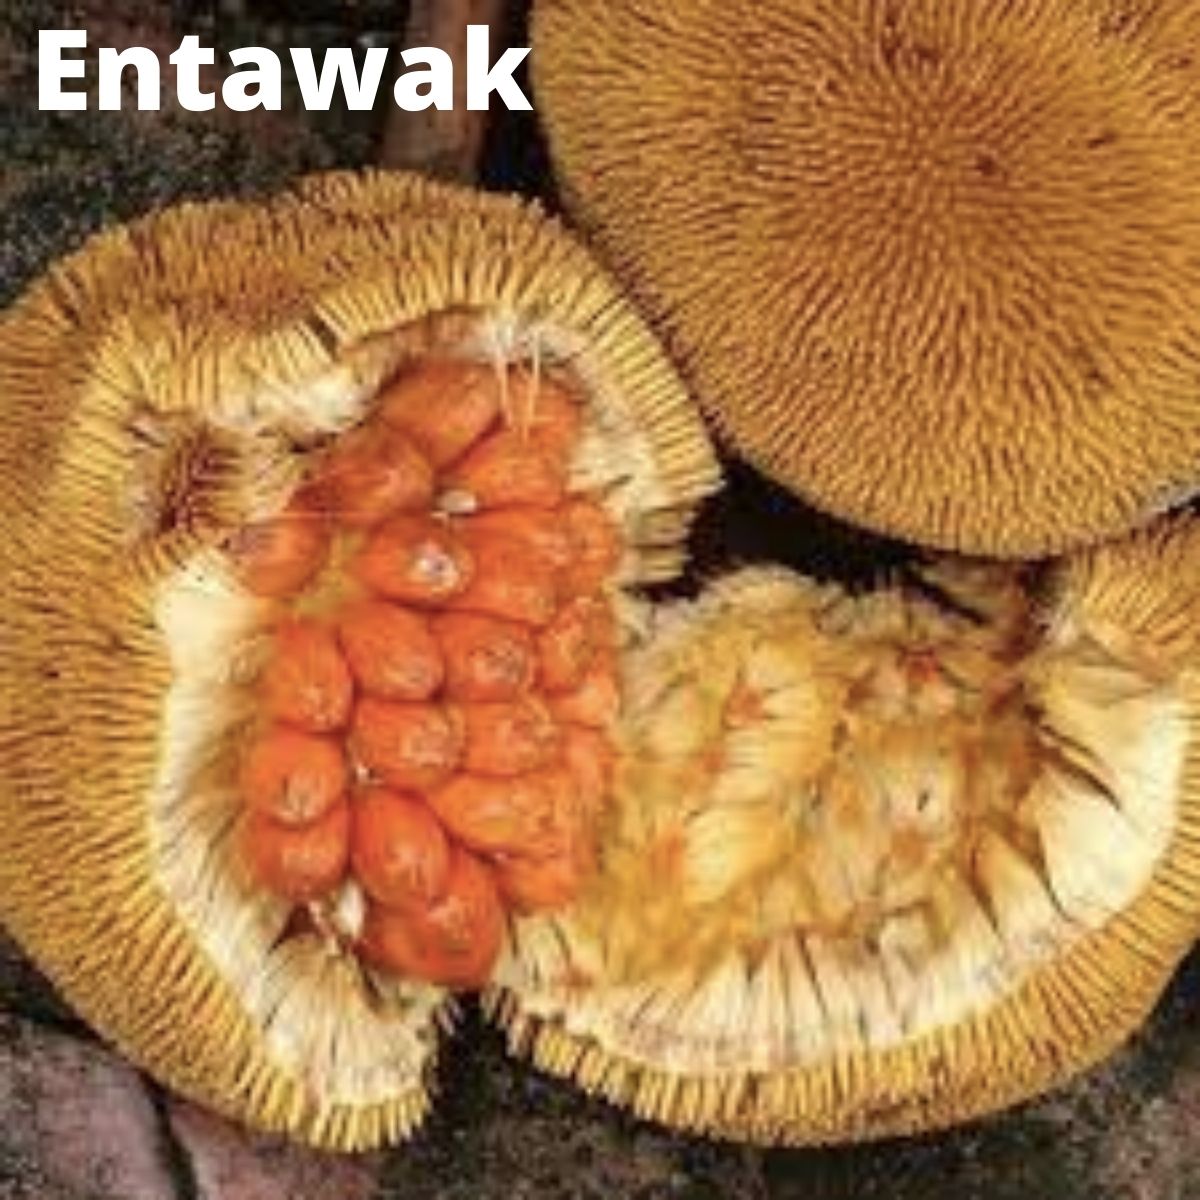 Cut open entawak fruit. 